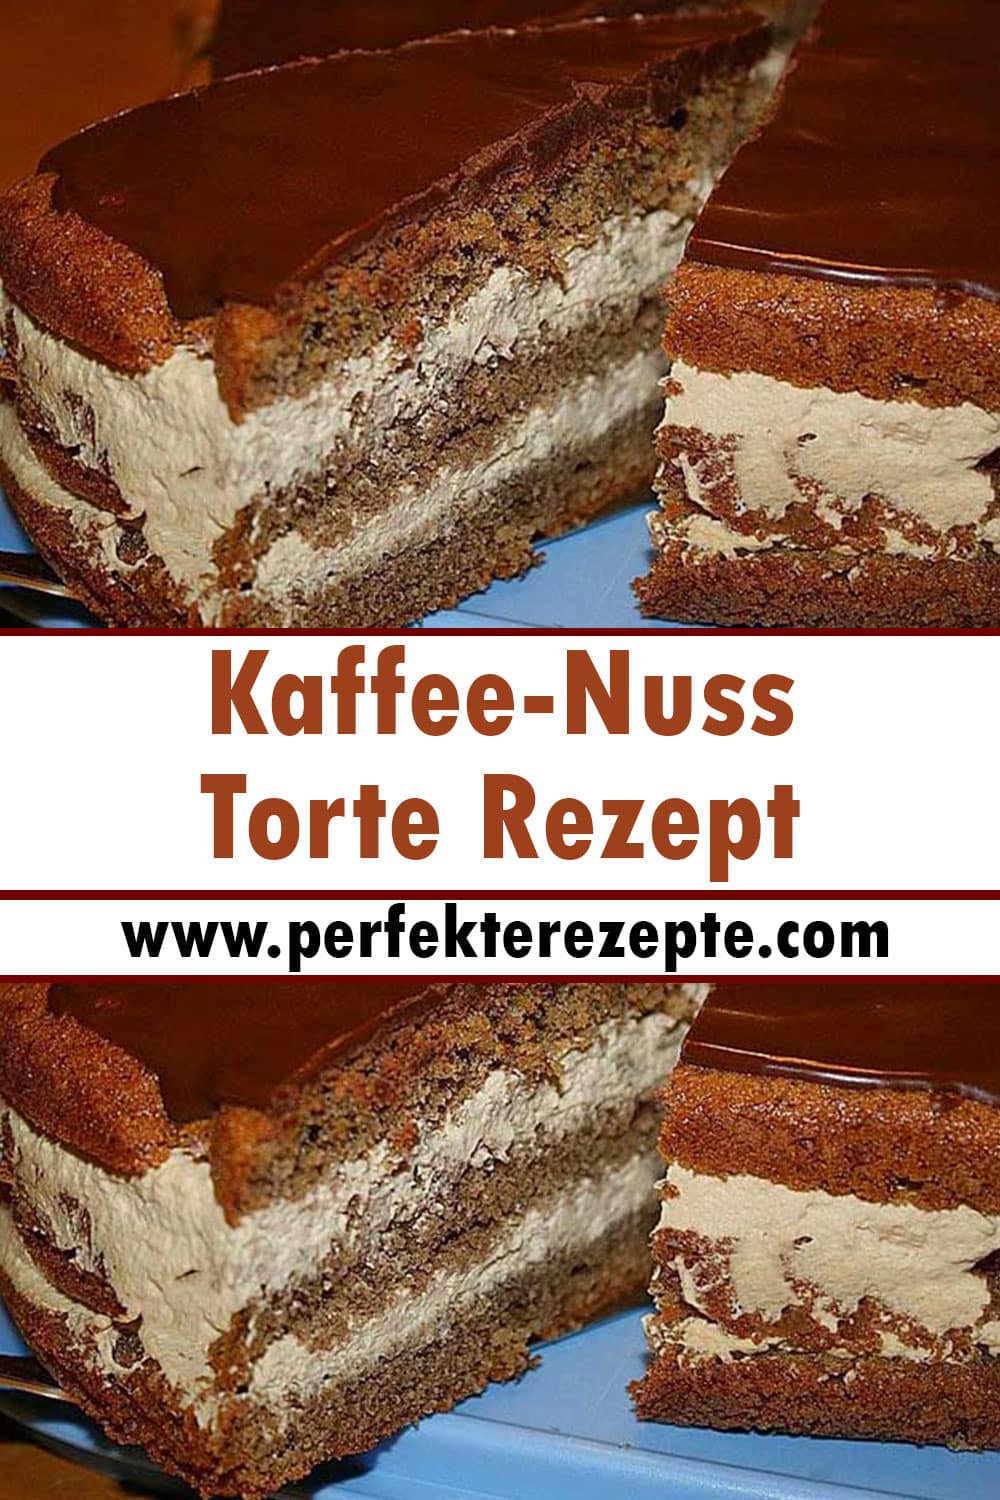 Kaffee-Nuss-Torte Rezept